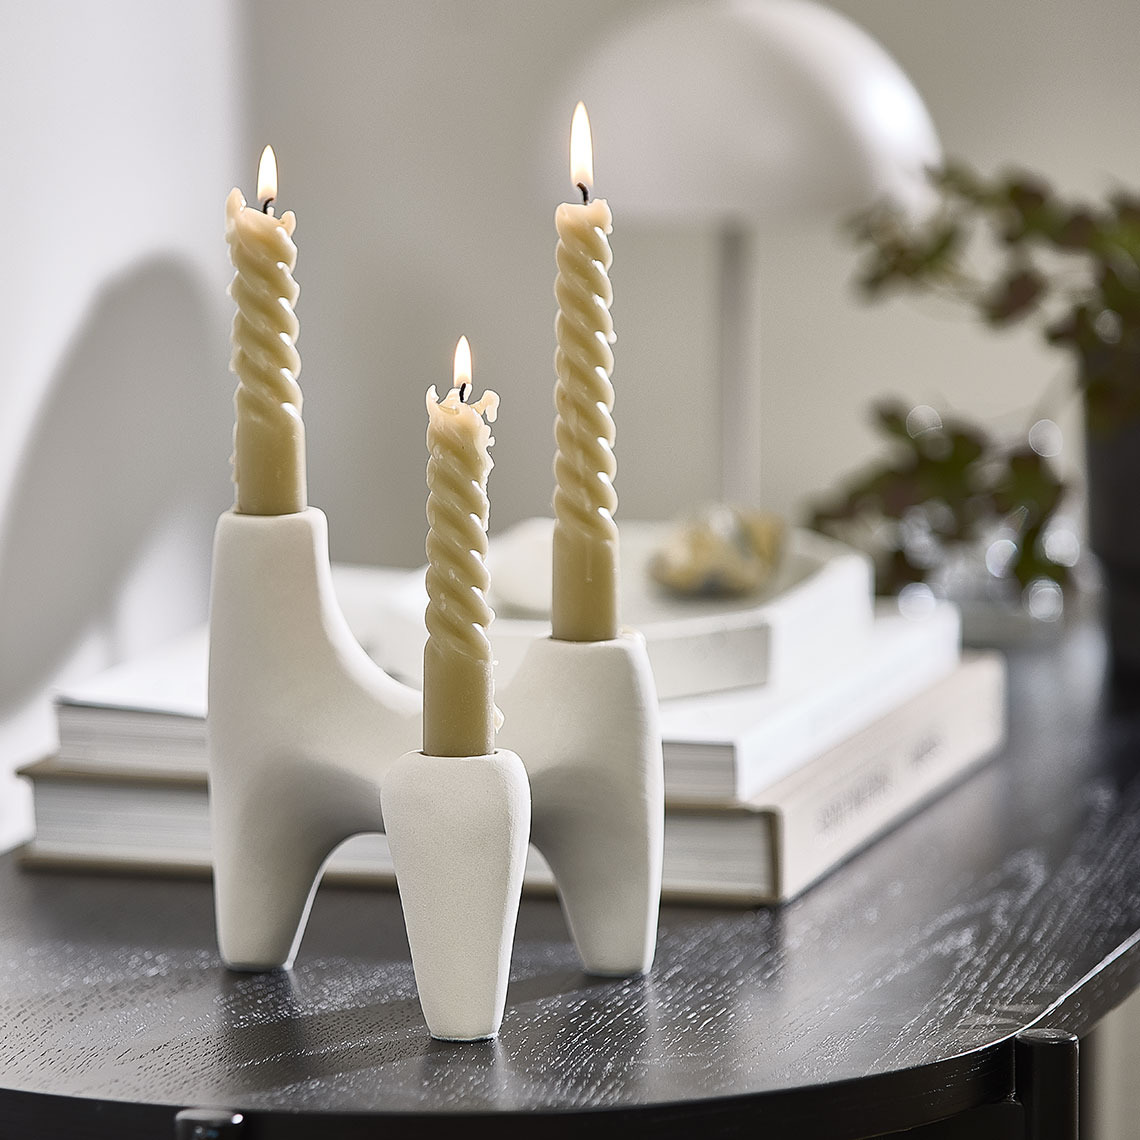 Valkoinen kynttilänjalka, jossa kierretyt kynttilät